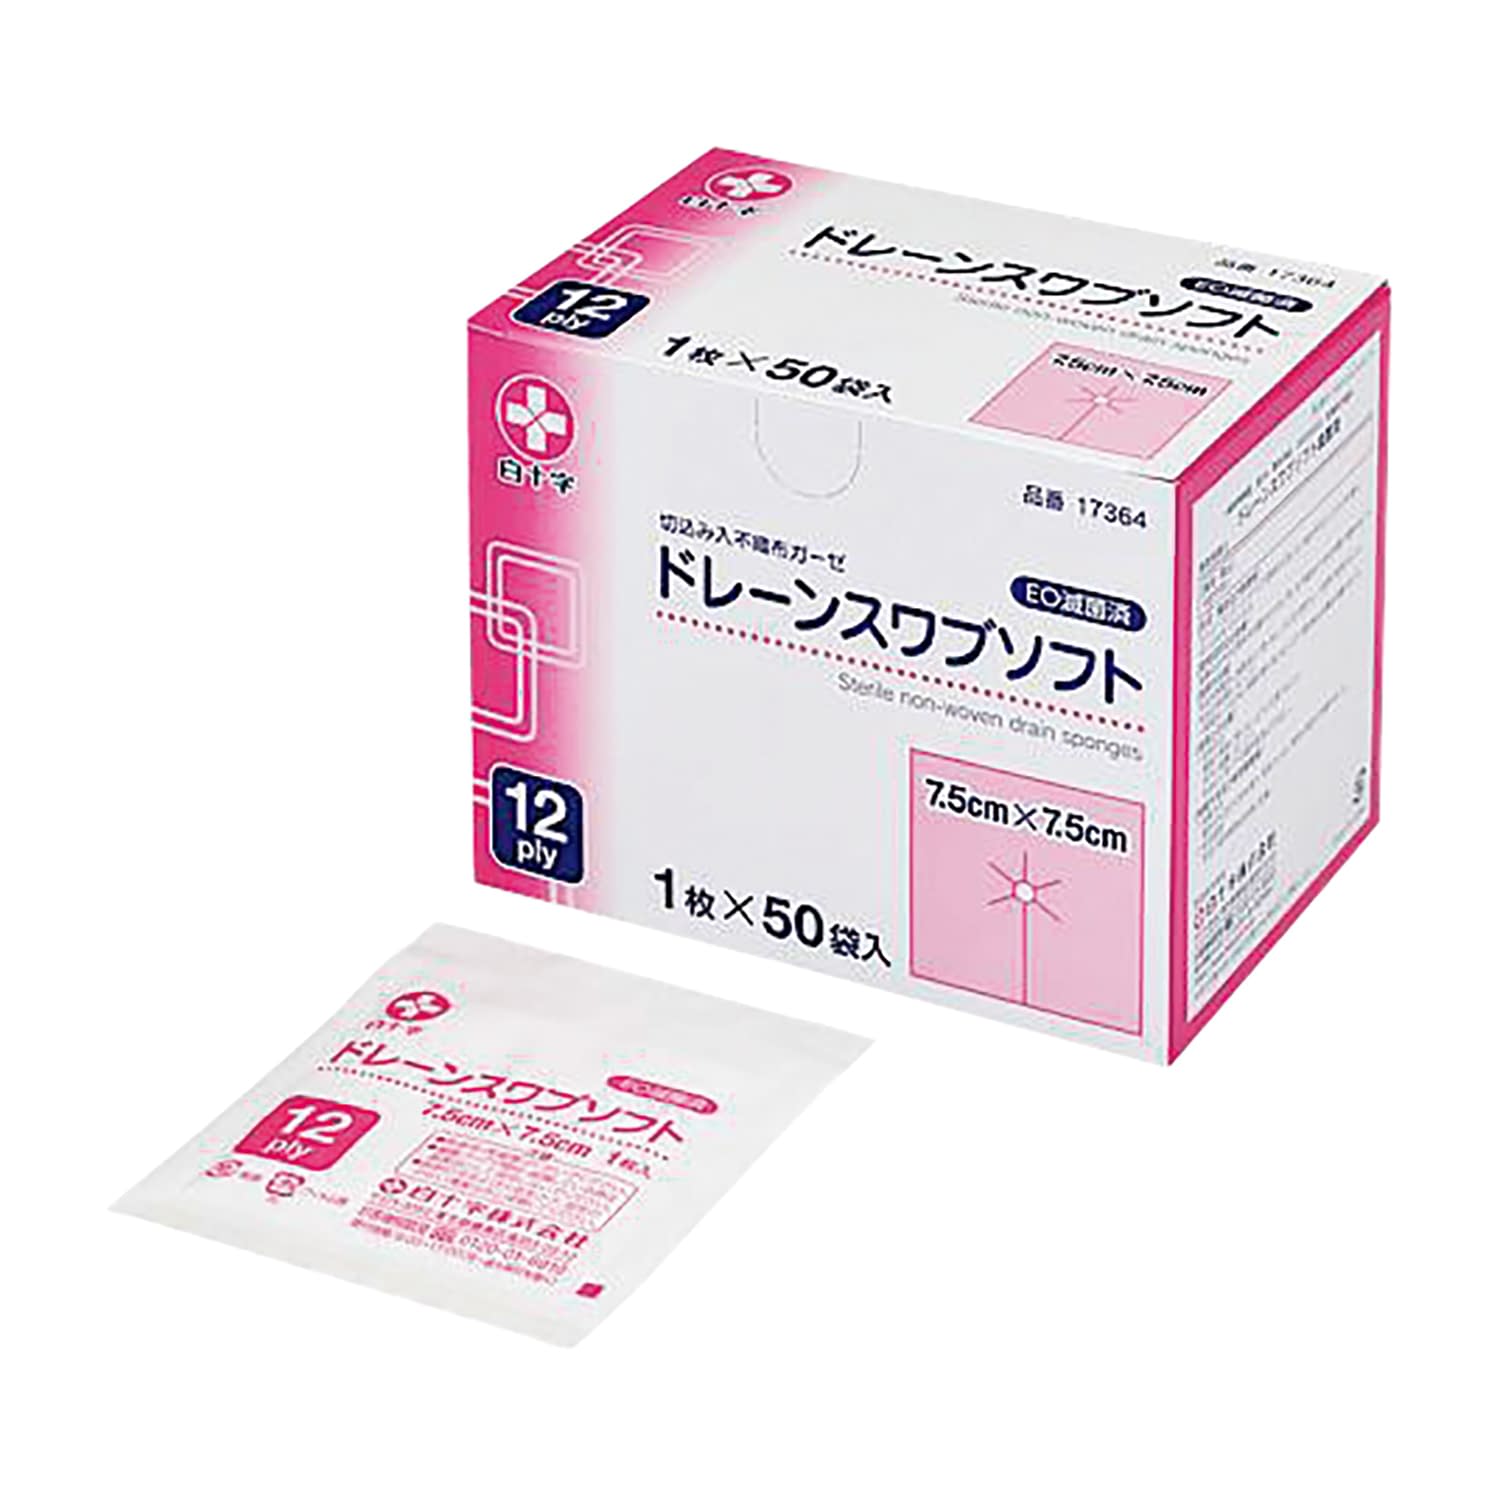 ストマ4箱(10枚入り✖︎4箱) - 看護/介護用品